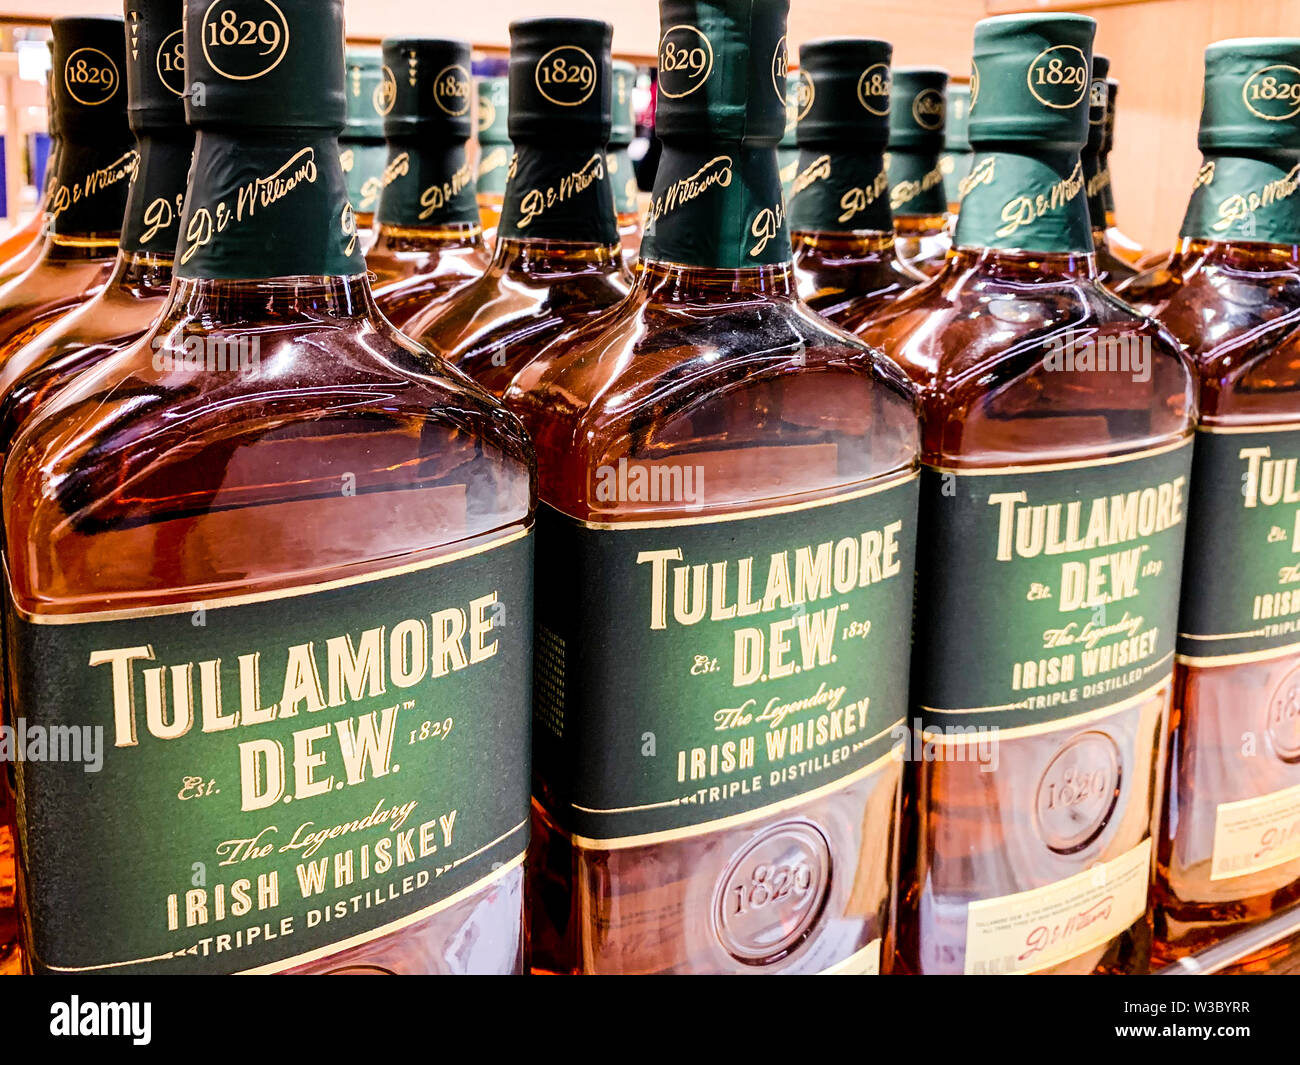 Bottiglie di Tullamore Dew whisky, un liquore irlandese marca fondata nel 1829, la vendita a livello internazionale. Istanbul/ Turchia - Aprile 2019 Foto Stock